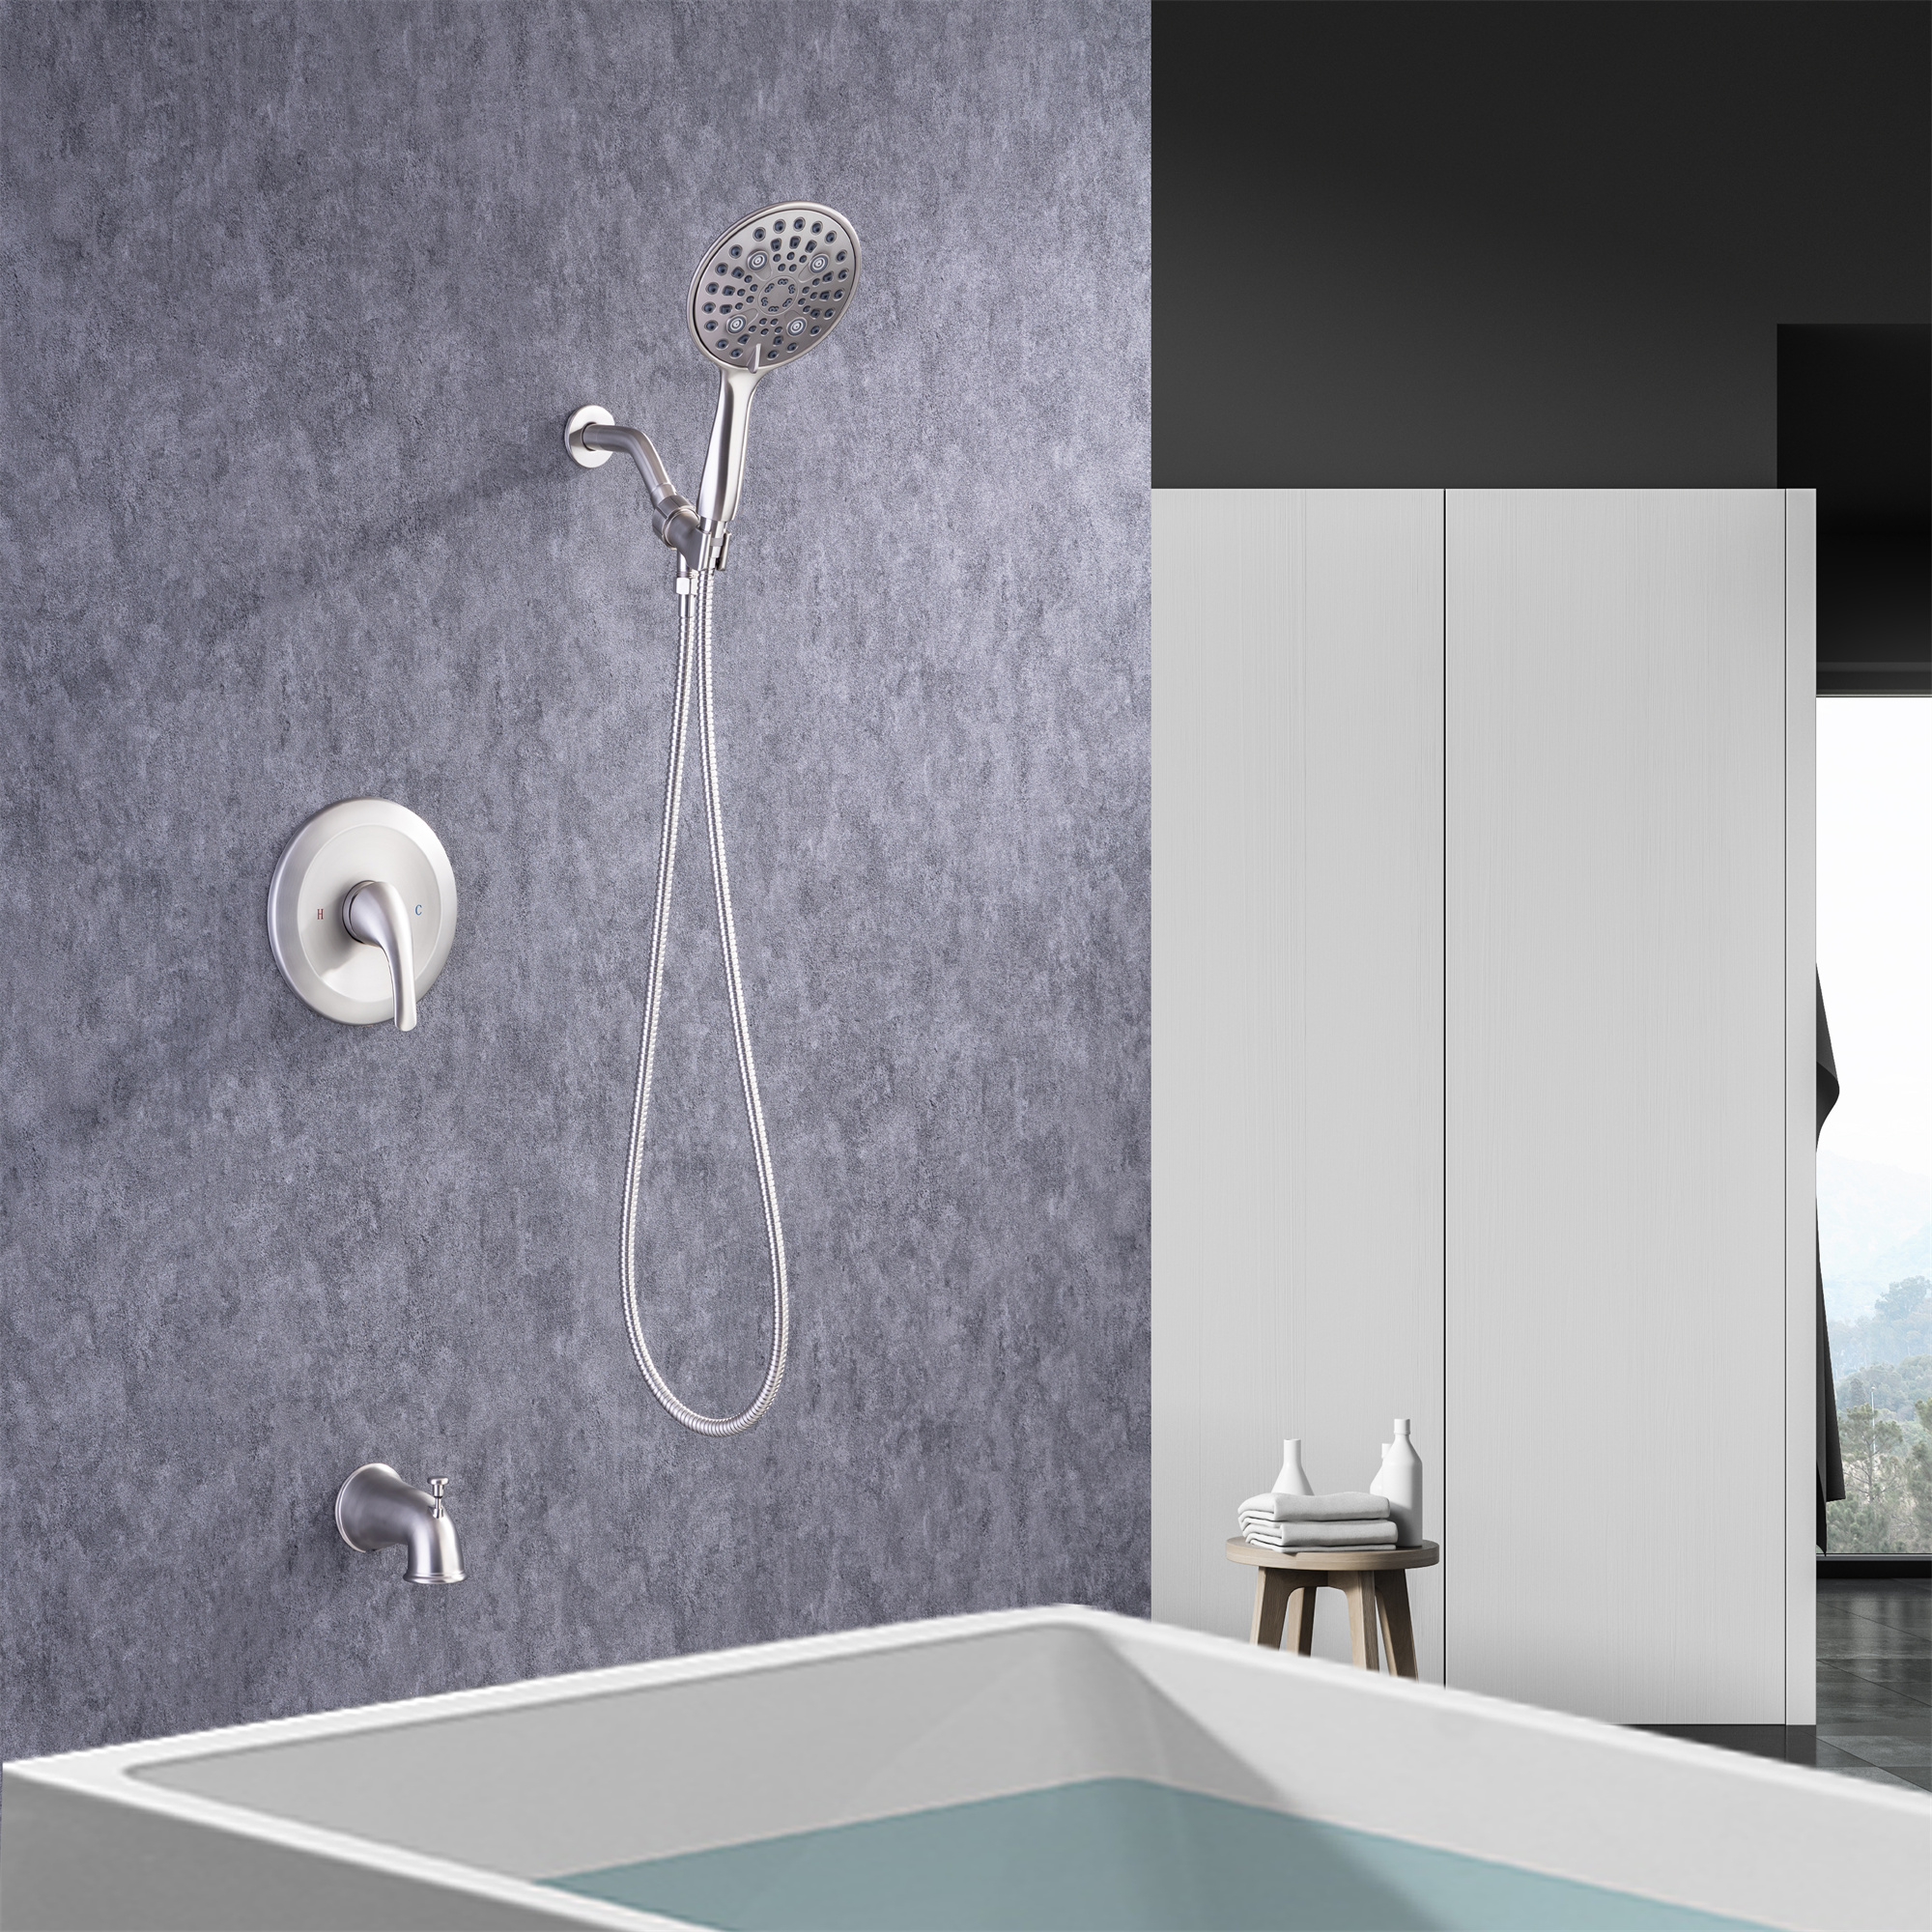 6 In. Detachable Handheld Shower Head Shower Faucet Shower System-Mondawe